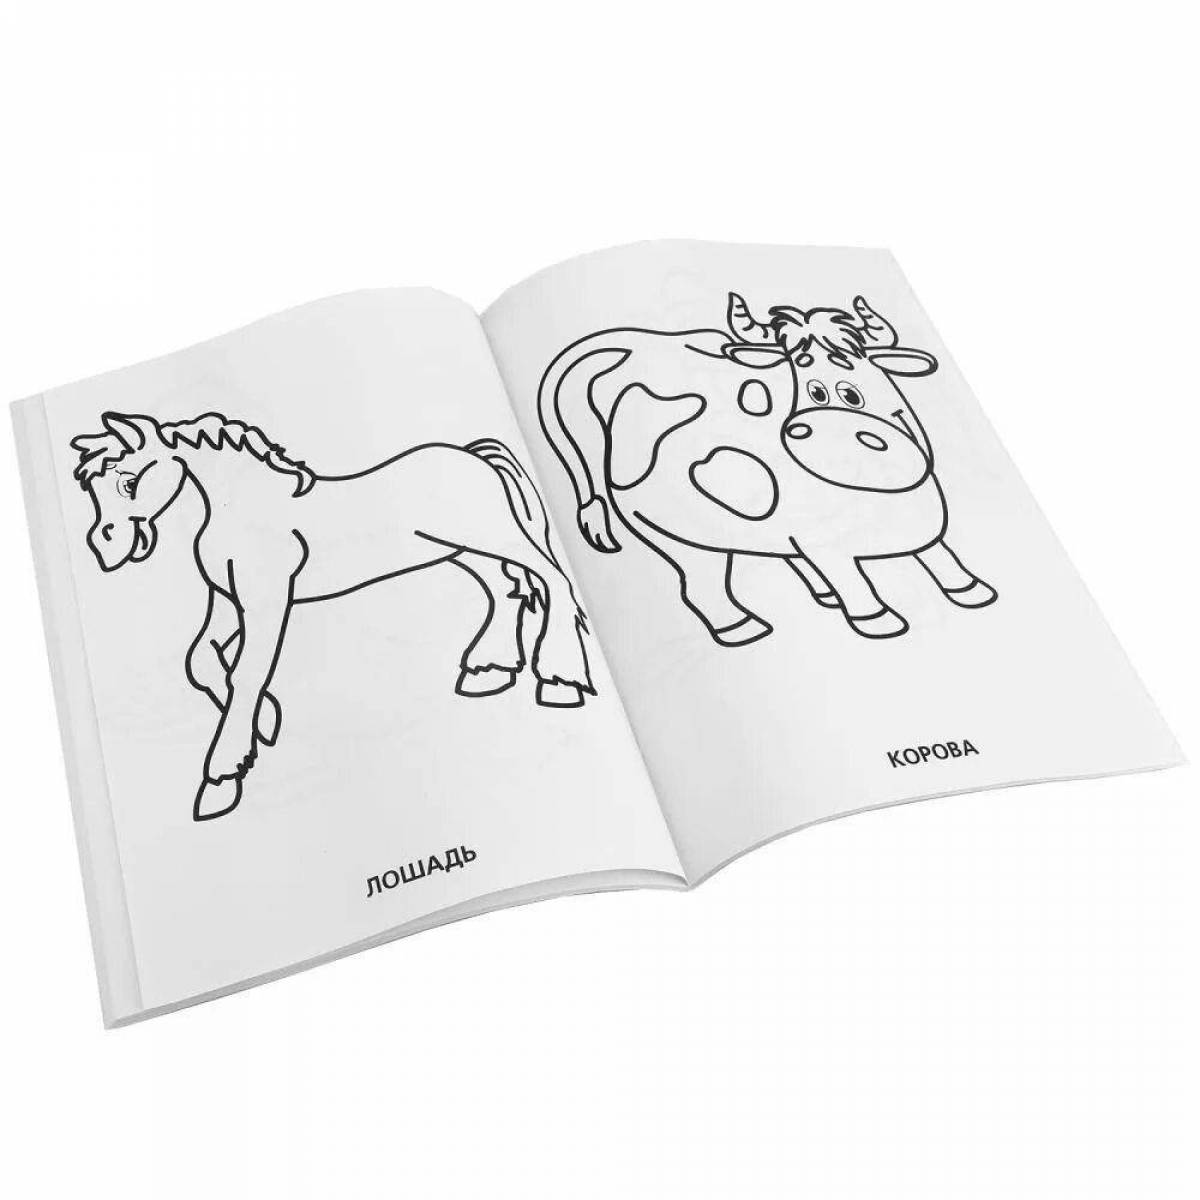 Wonderful Tumka coloring book